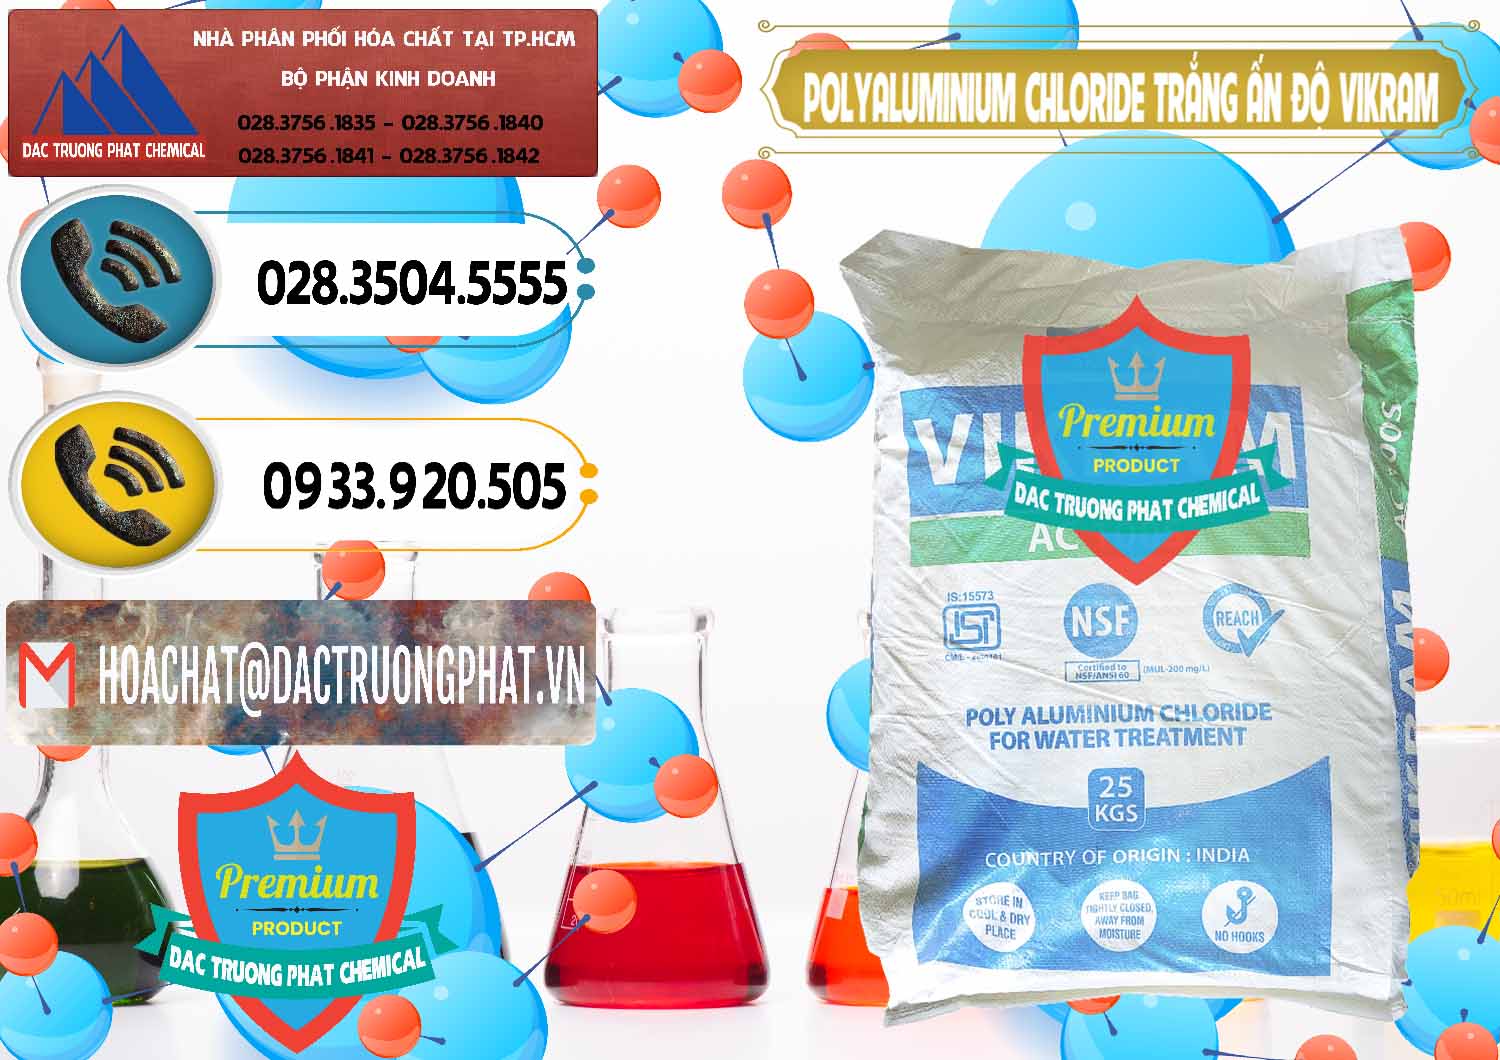 Công ty bán & phân phối PAC - Polyaluminium Chloride Trắng Aditya Birla Grasim New 2022 Ấn Độ India - 0486 - Chuyên phân phối - nhập khẩu hóa chất tại TP.HCM - hoachatdetnhuom.vn